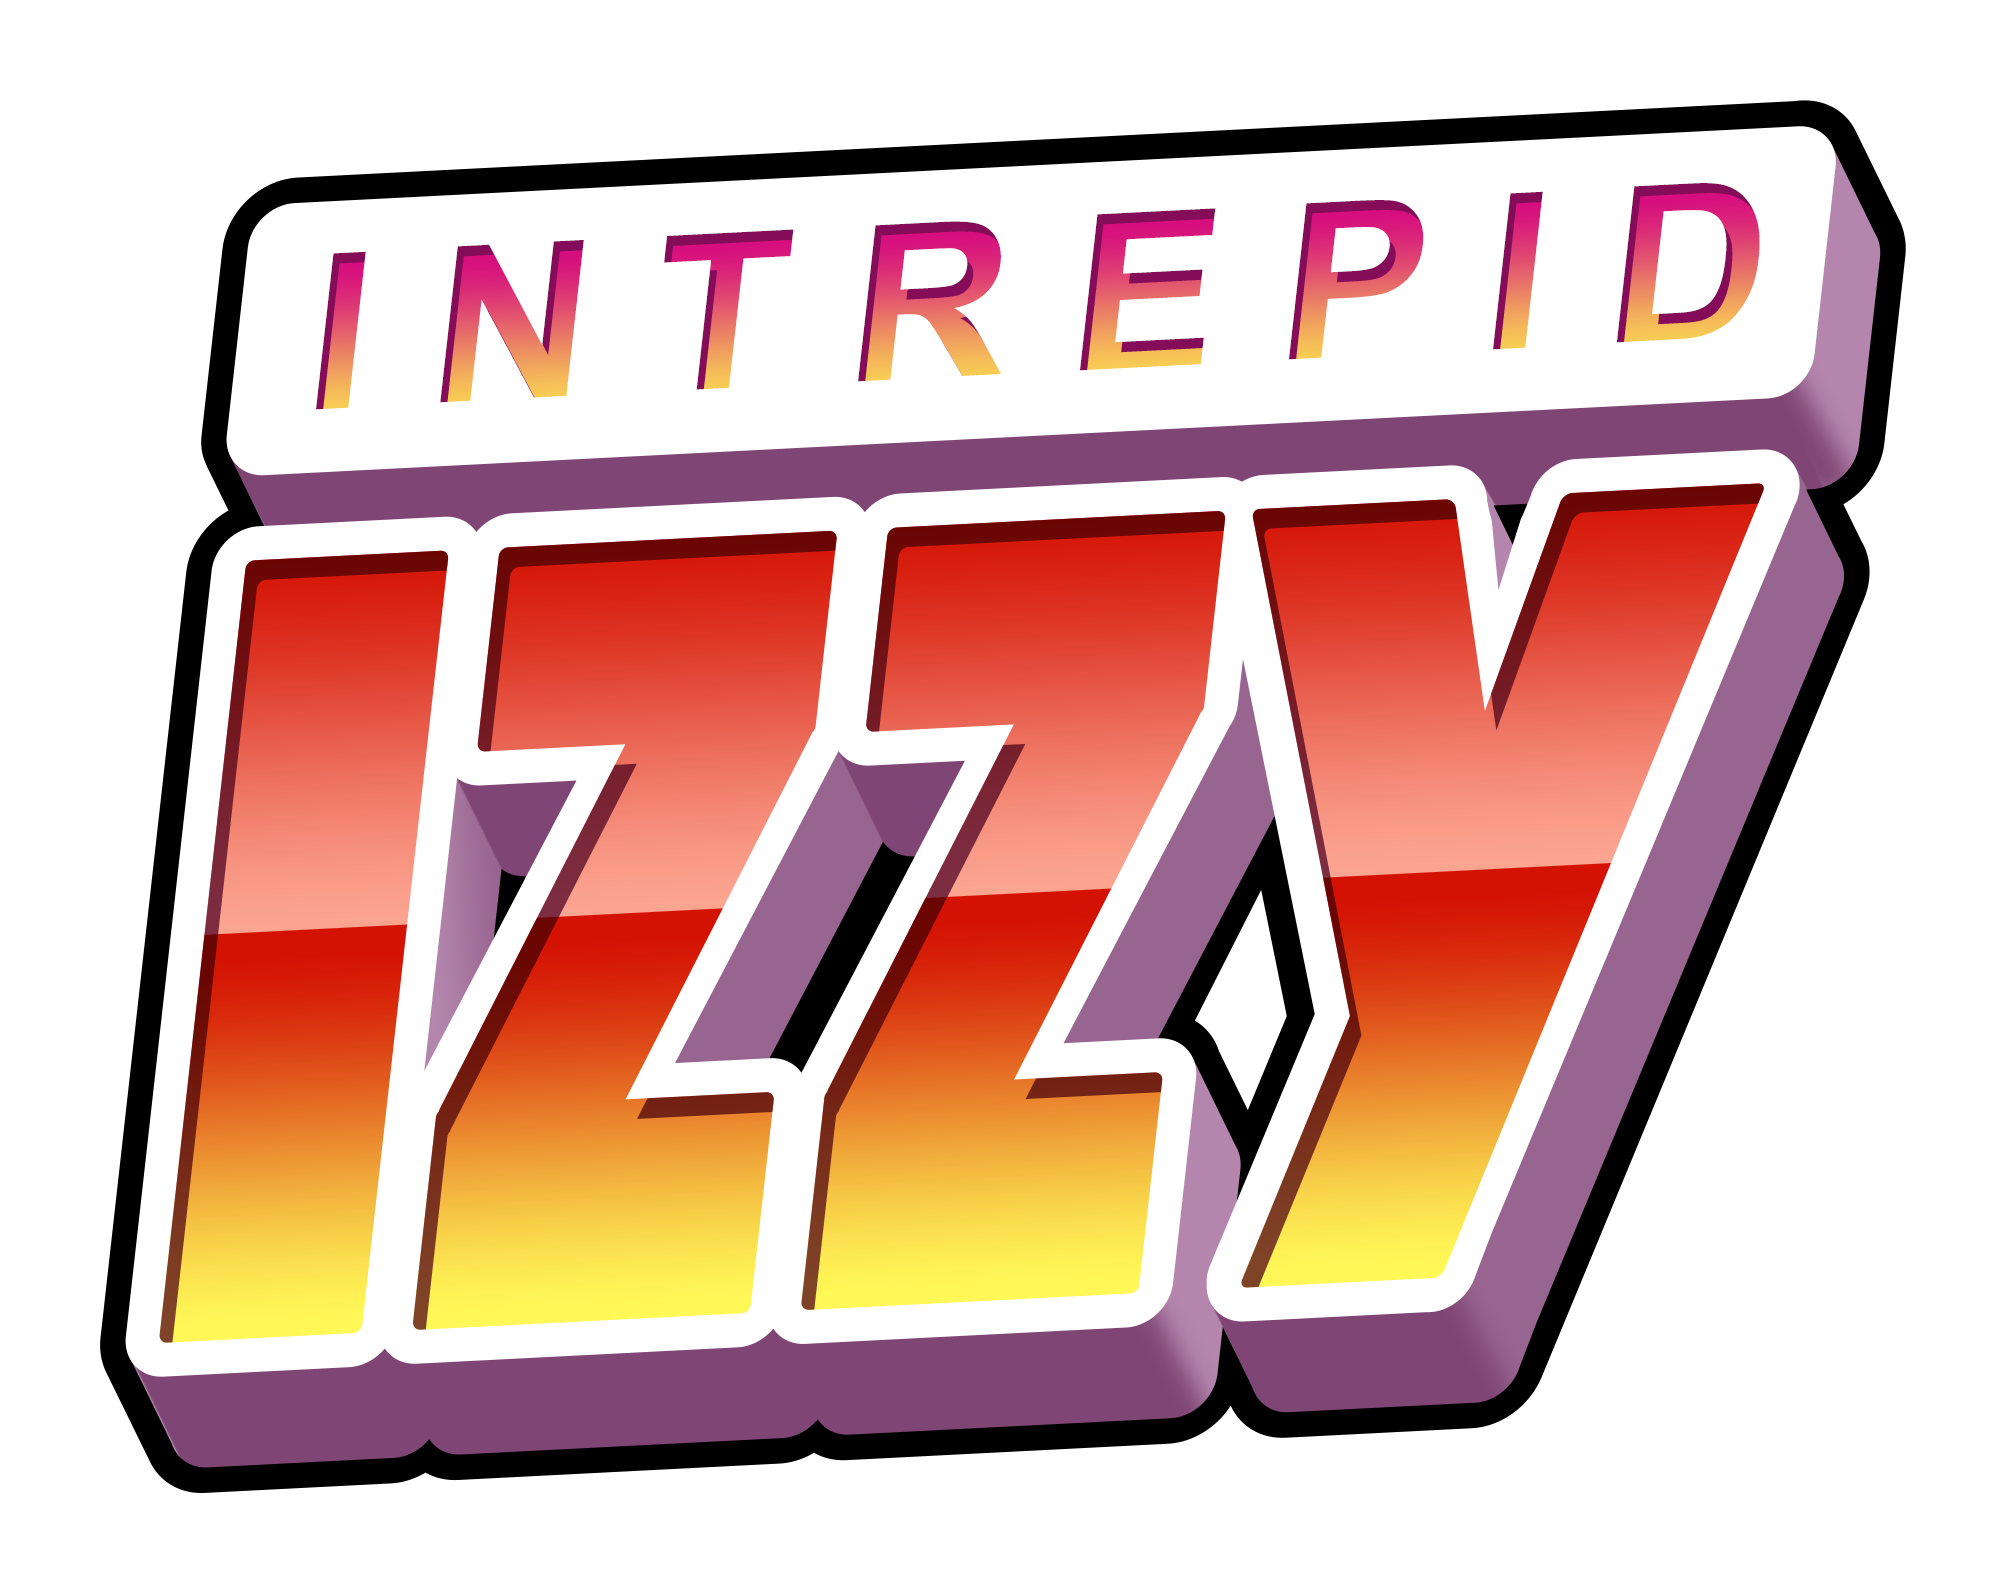 Intrepid Izzy logo